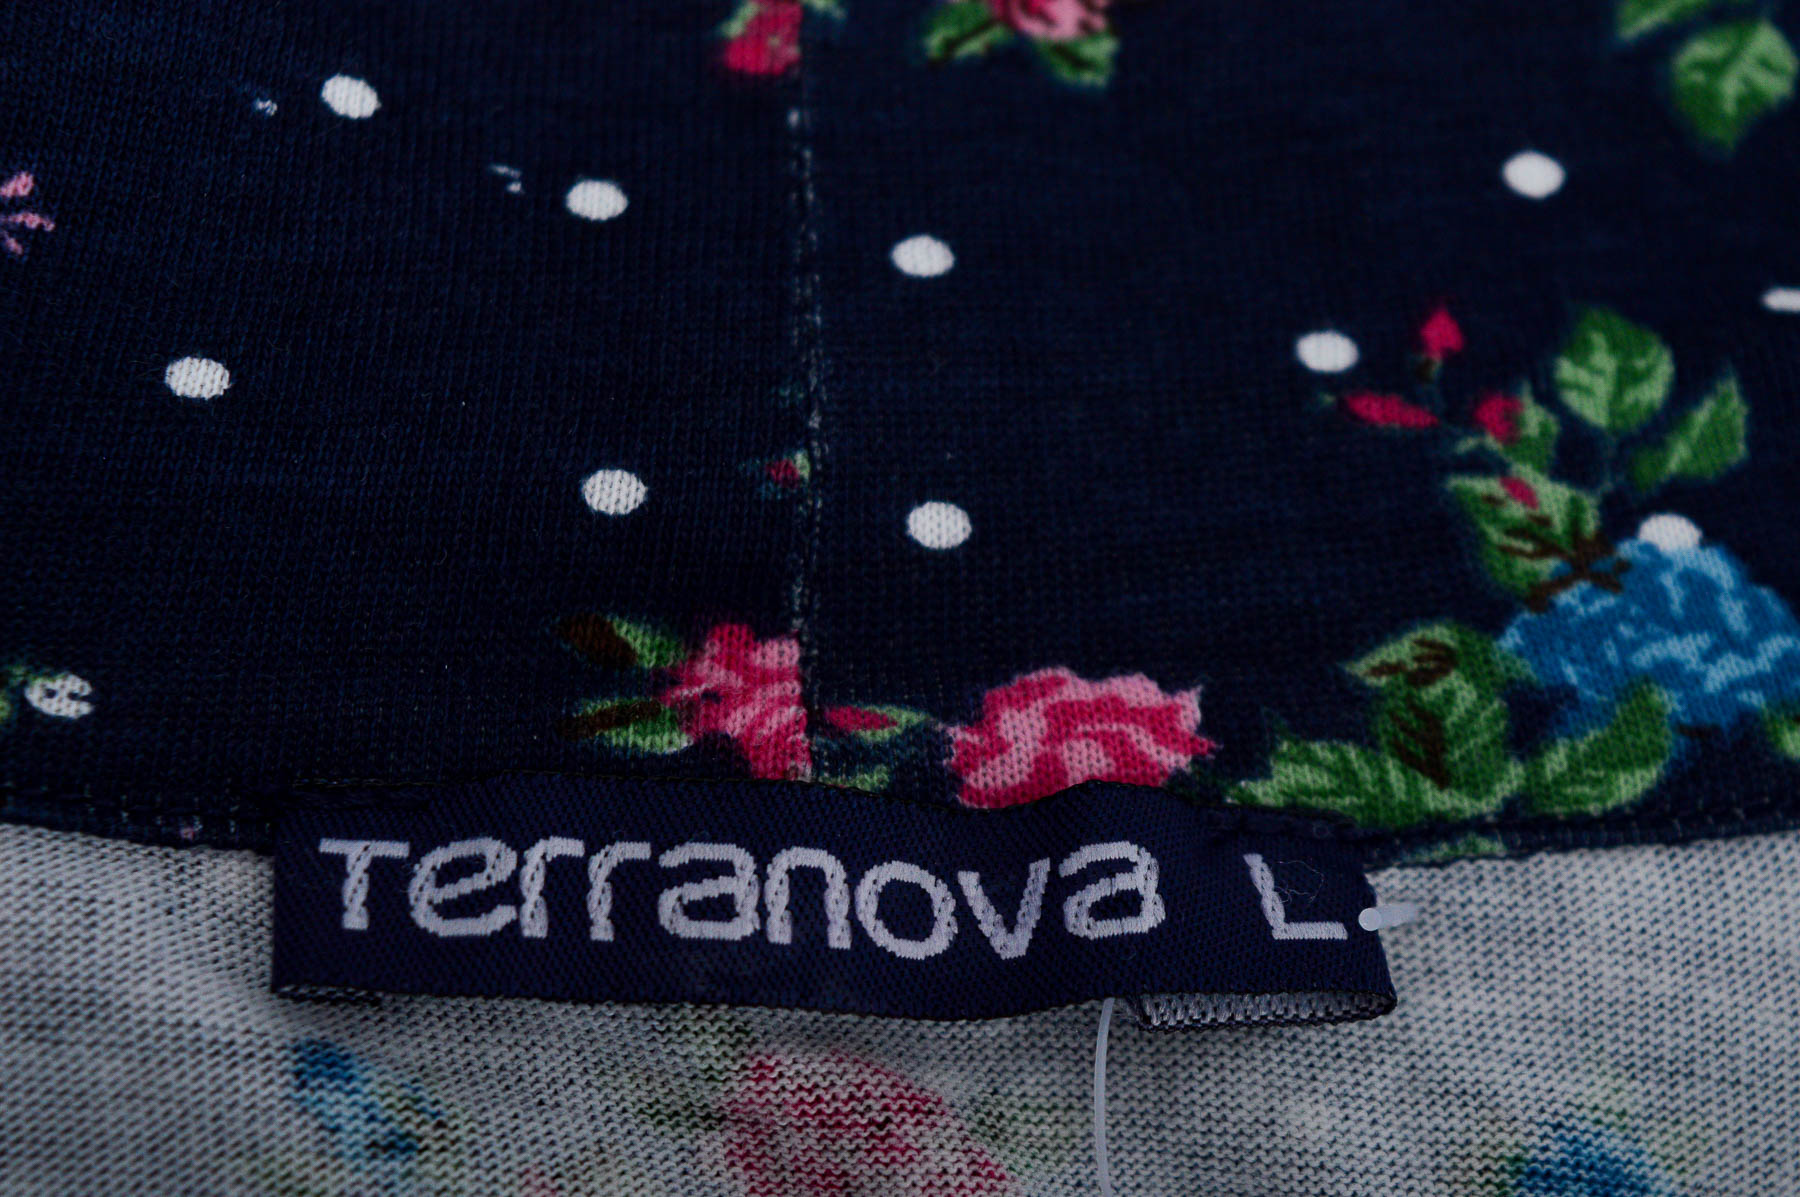 Bluza de damă - Terranova - 2